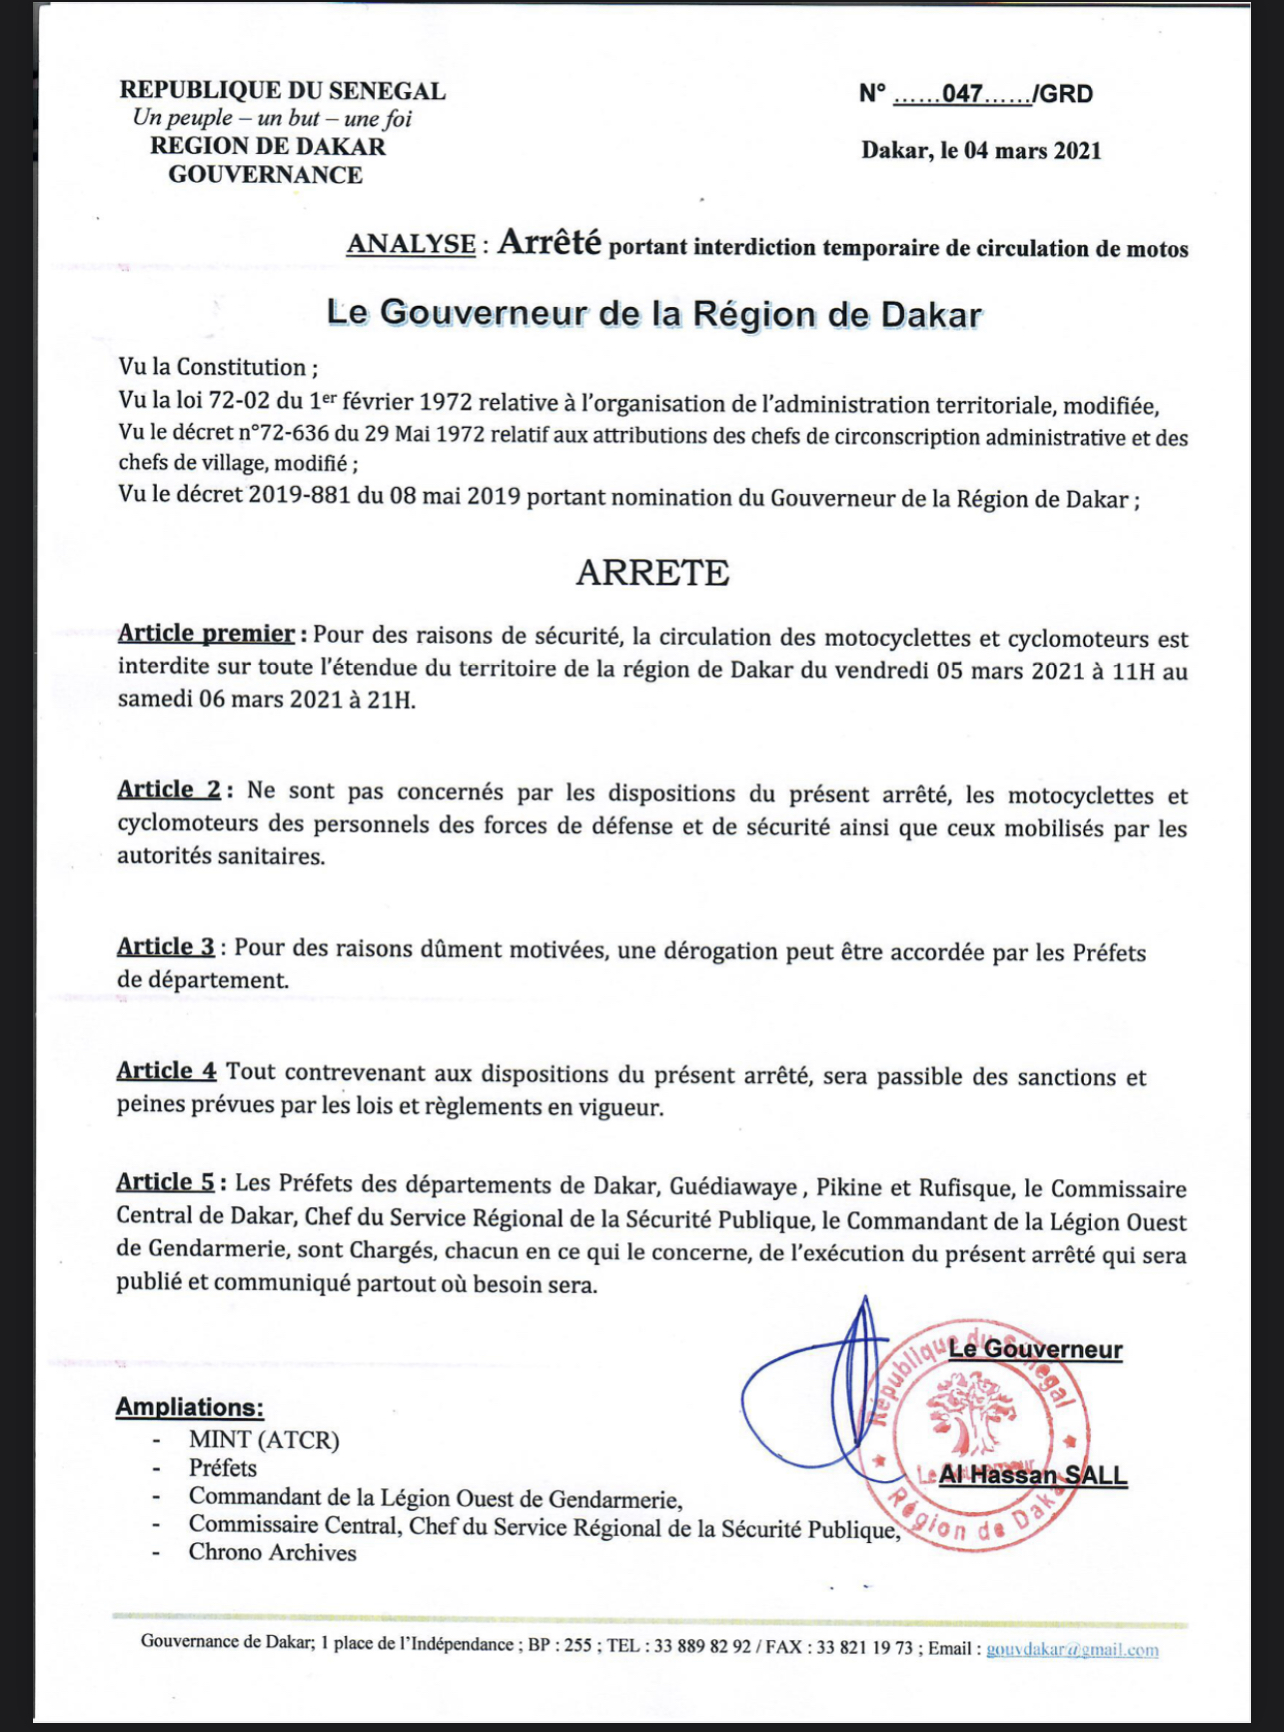 Dakar : La circulation des motocyclettes et cyclomoteurs est interdite à partir de 11 heures ce vendredi jusqu’à samedi à 21 heures. (DOCUMENTS)